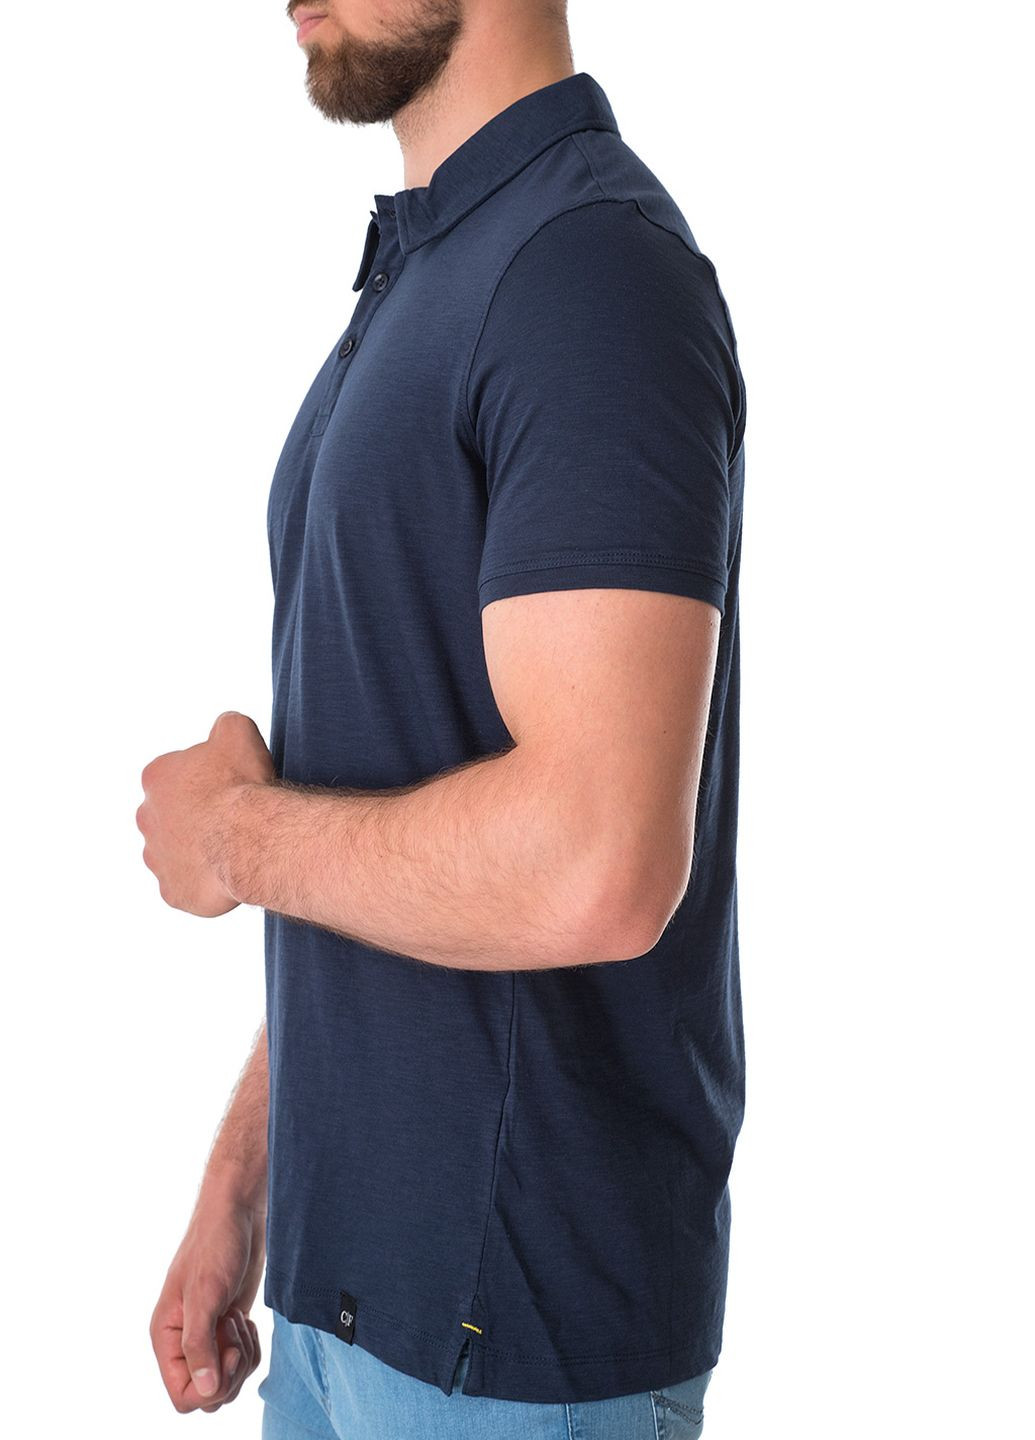 Синяя футболка-поло для мужчин Commander однотонная